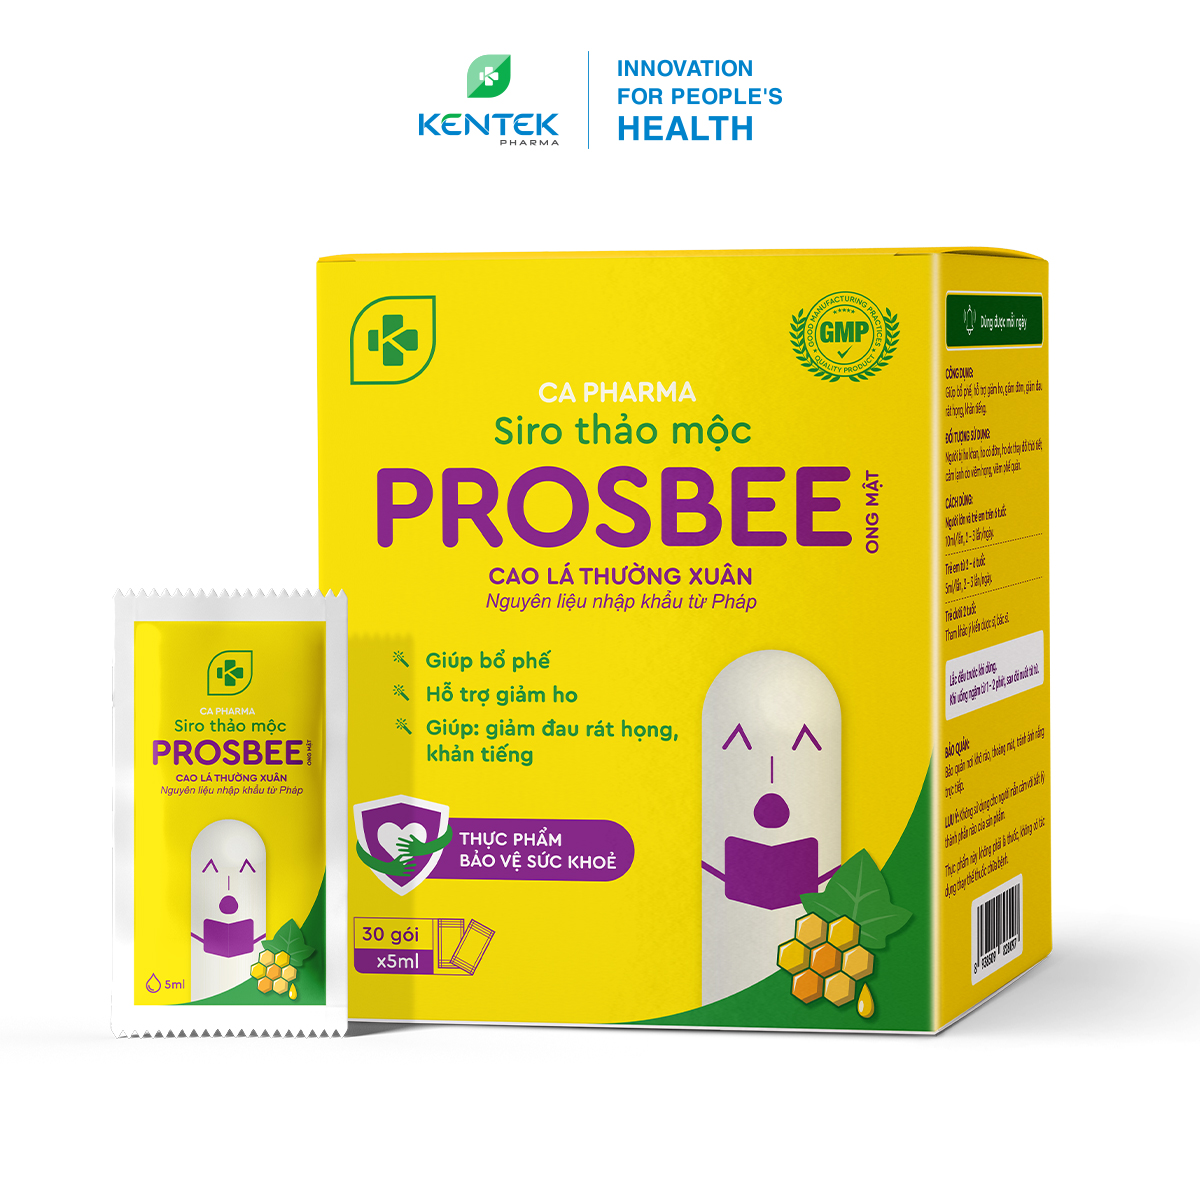 Siro ho thảo dược bổ phế, giảm ho dành cho trẻ em PROSBEE Ong Mật | Kentek Pharma | Gói 5ml, hộp 30 gói